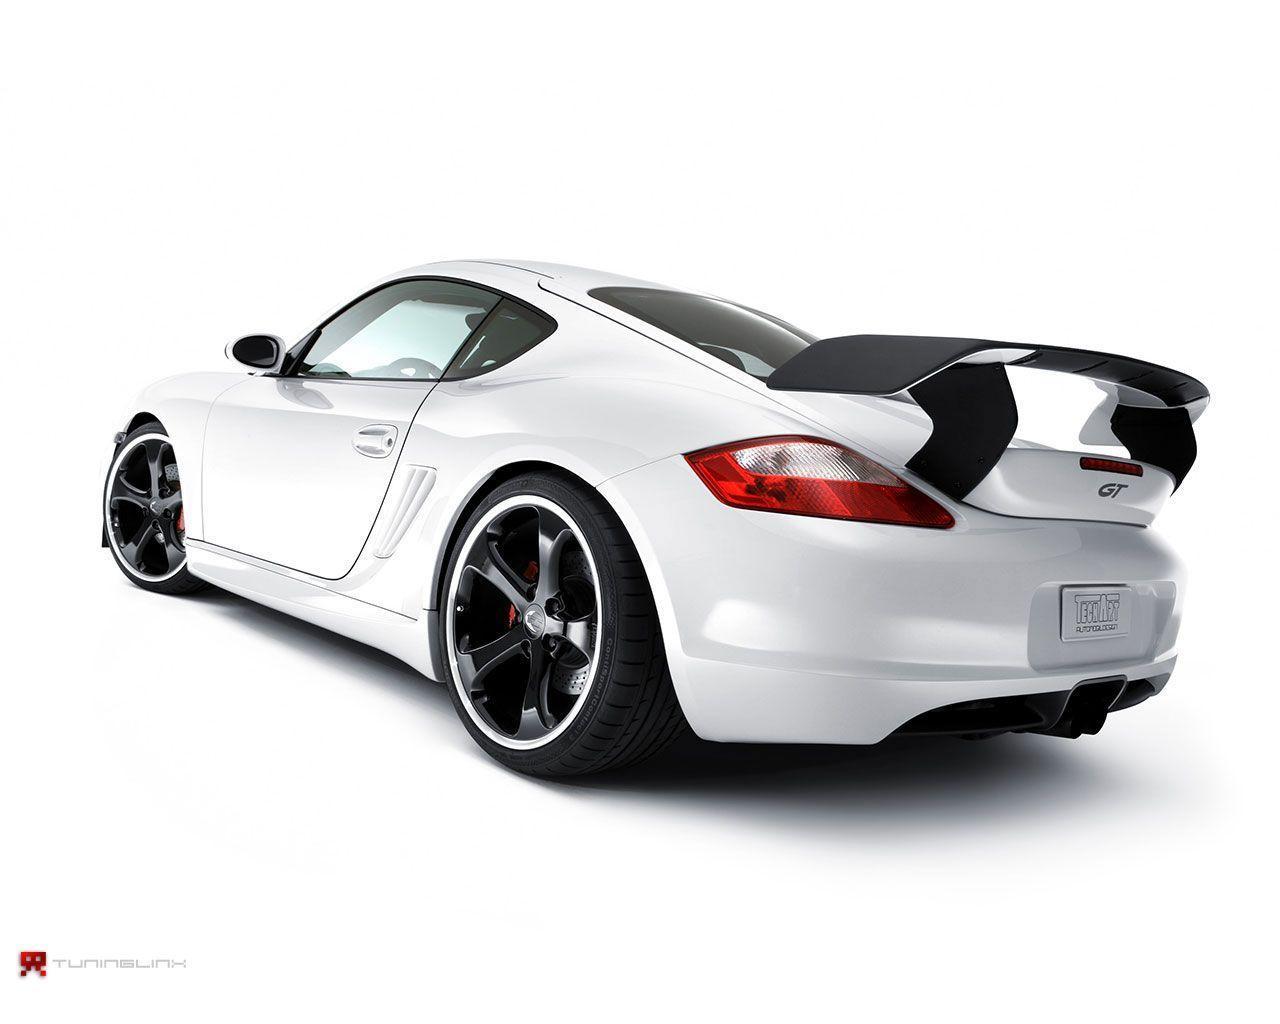 Porsche Cayman S Wallpaper. HD Wallpaper Base